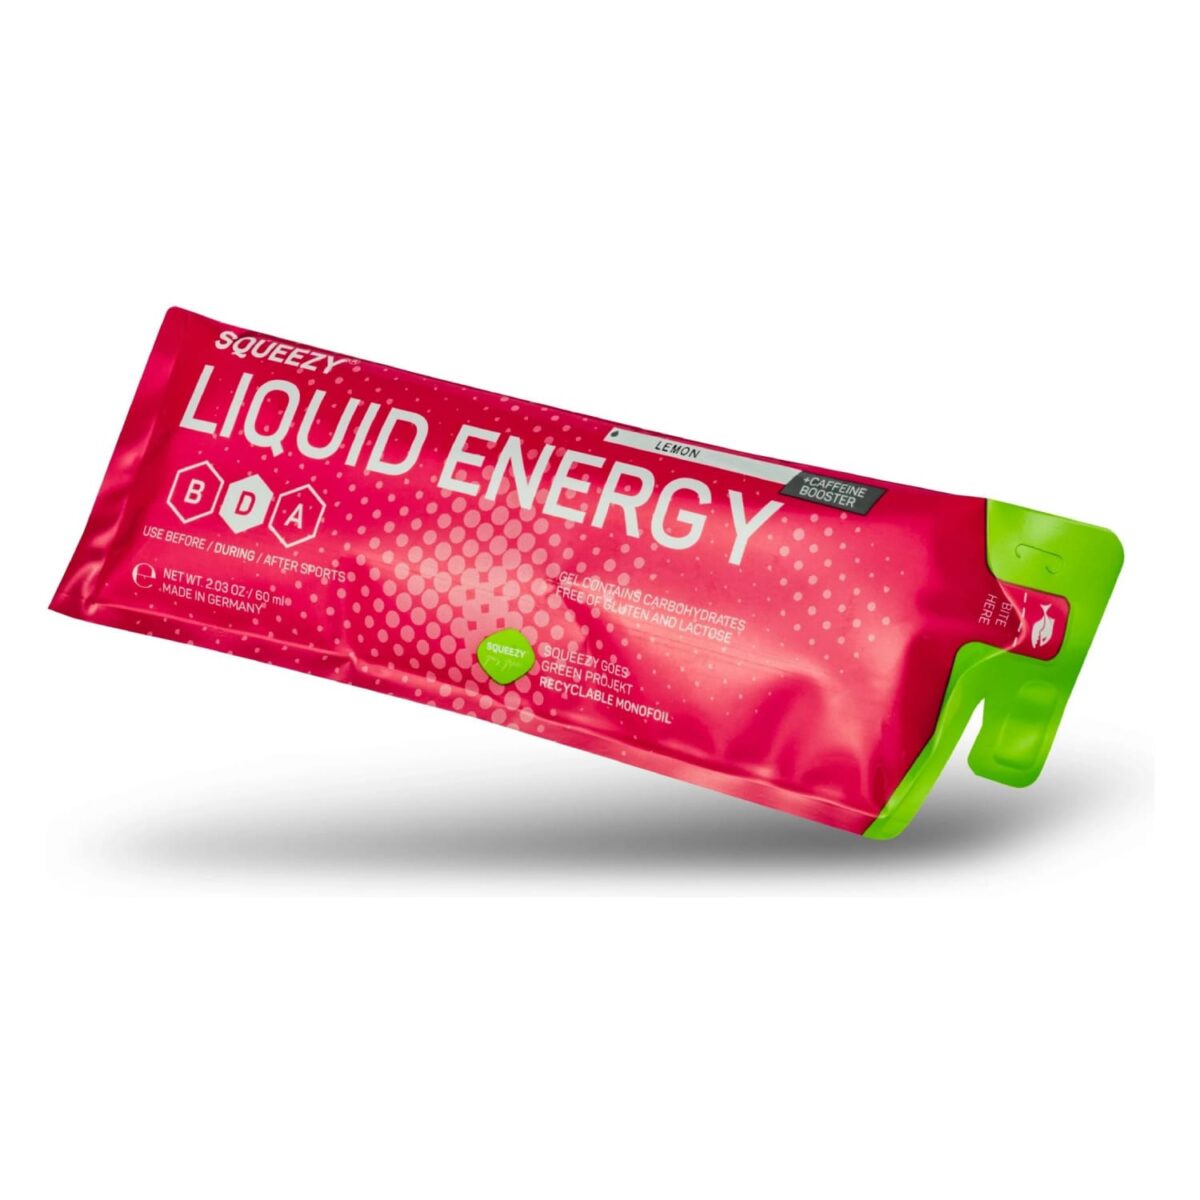 sqeezy-liquid-energy-watermelon-1